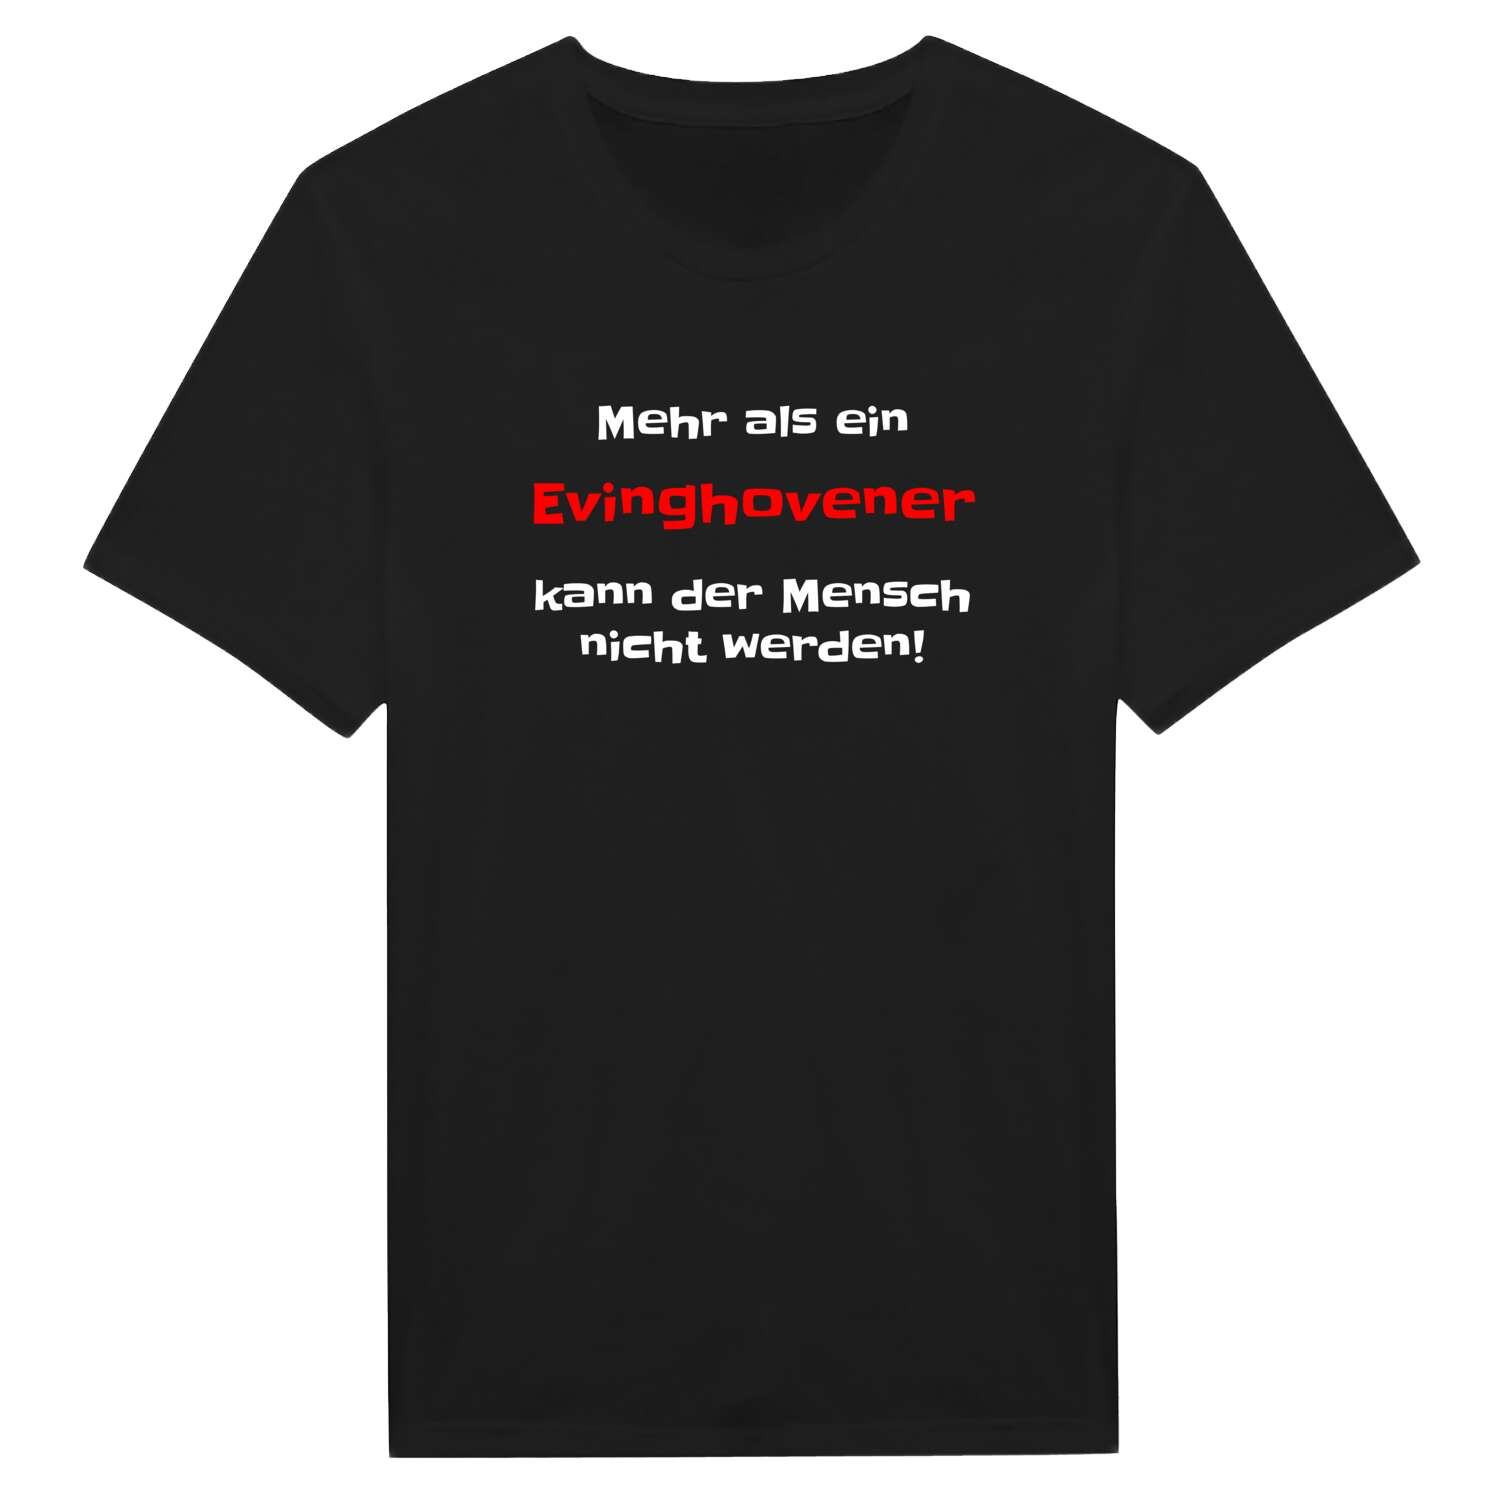 Evinghoven T-Shirt »Mehr als ein«